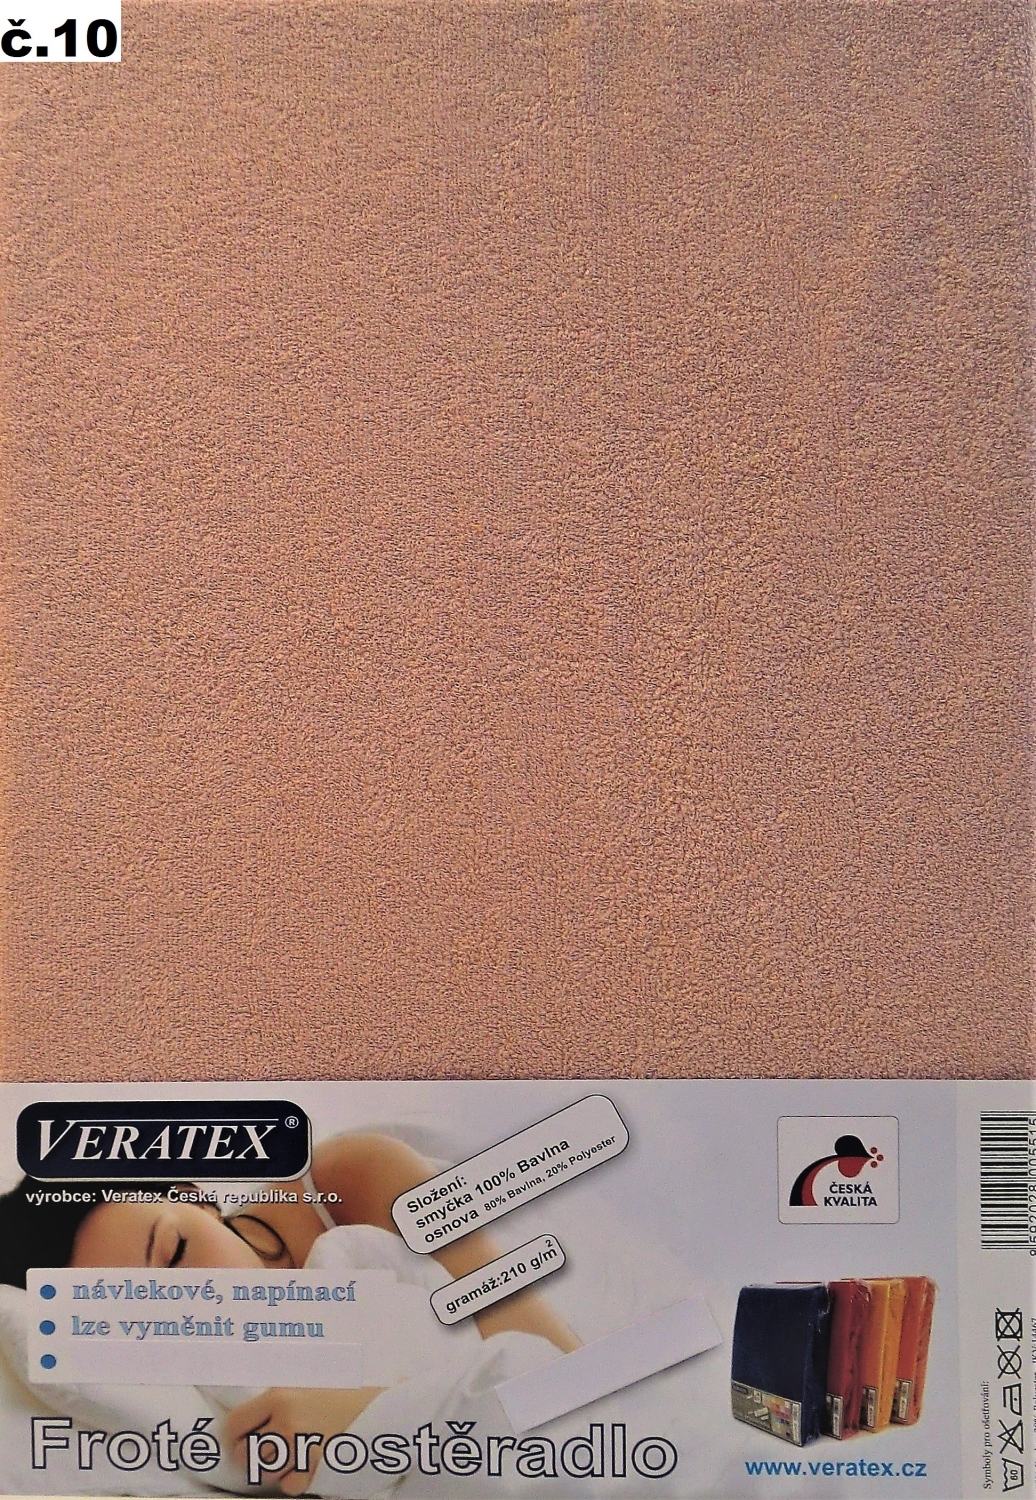 Veratex Froté prostěradlo dvoulůžko 180x200 cm (č.10-starorůžová)